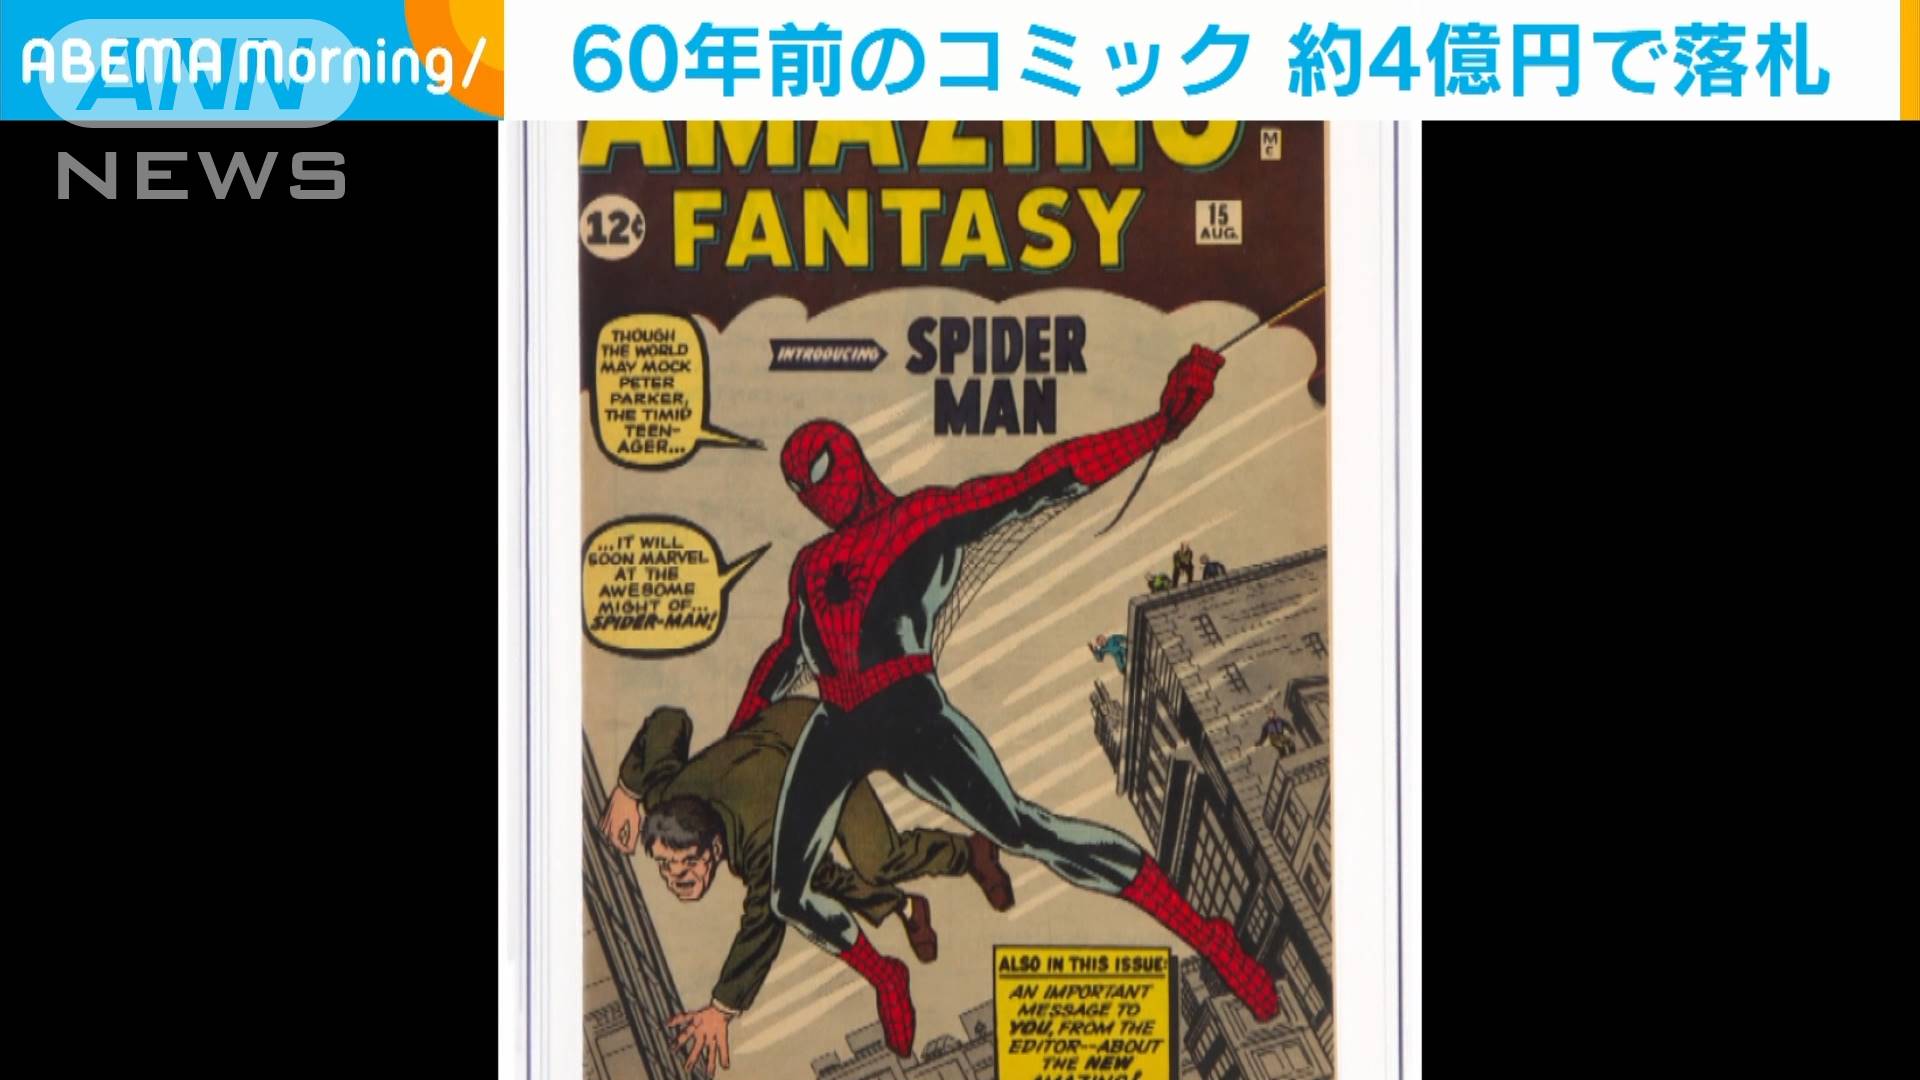 60年前 初のスパイダーマン 1冊 約4億円で落札 テレ朝news テレビ朝日のニュースサイト